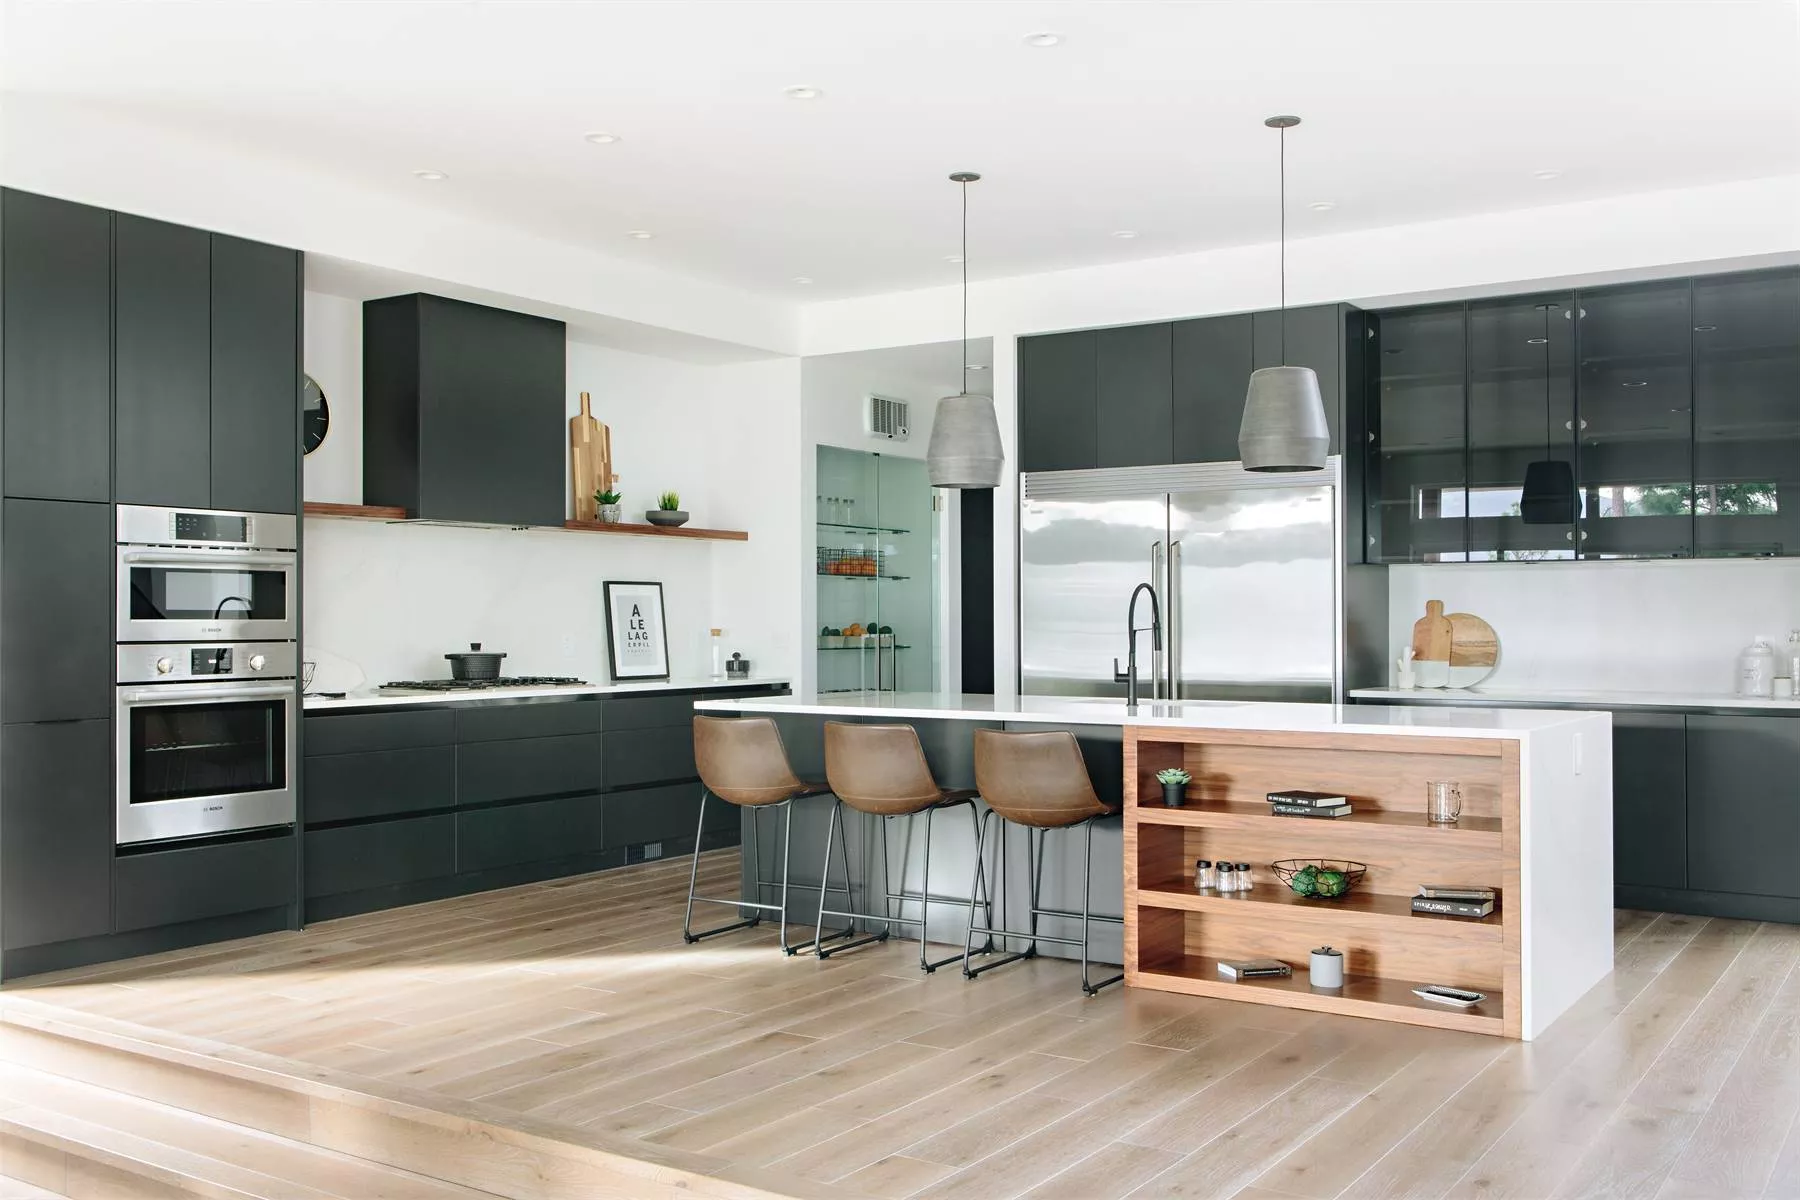 minimalist design in a kitchen